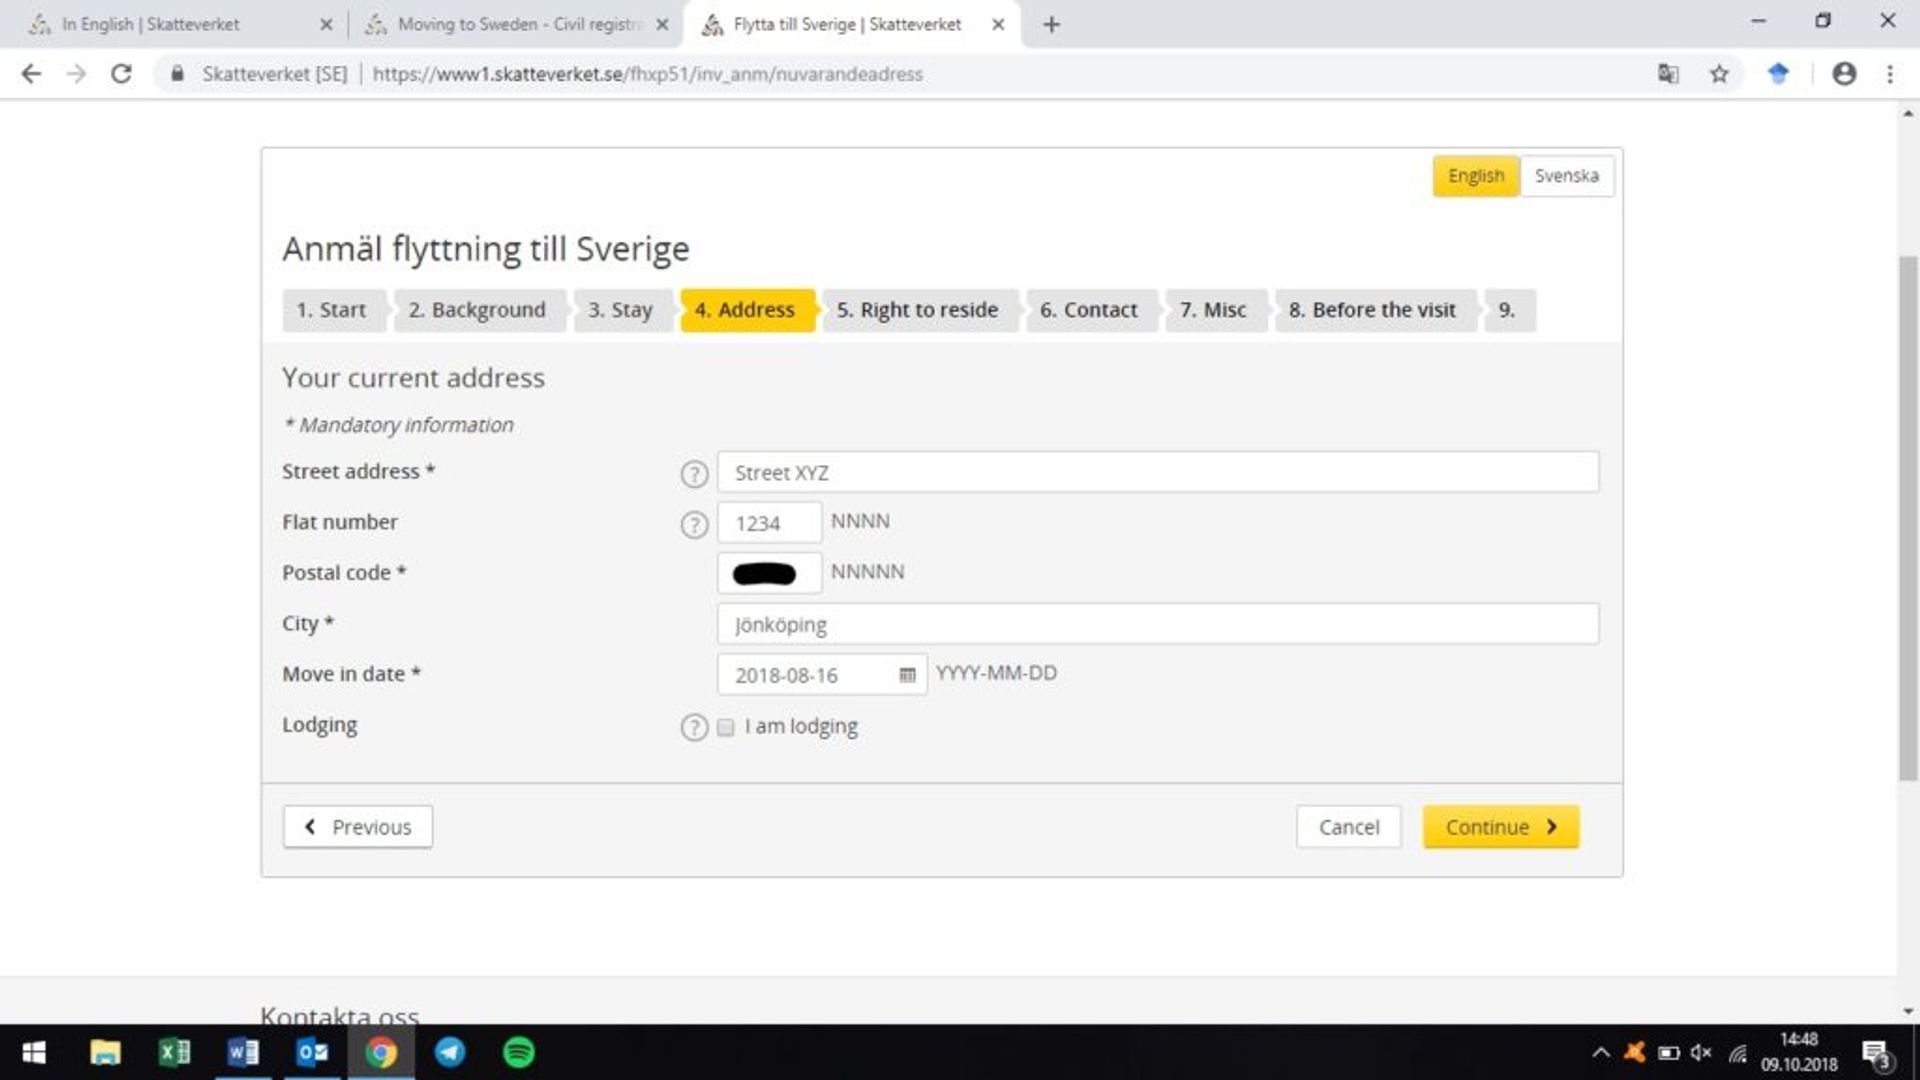 Screenshot of online application form - address in Sweden.